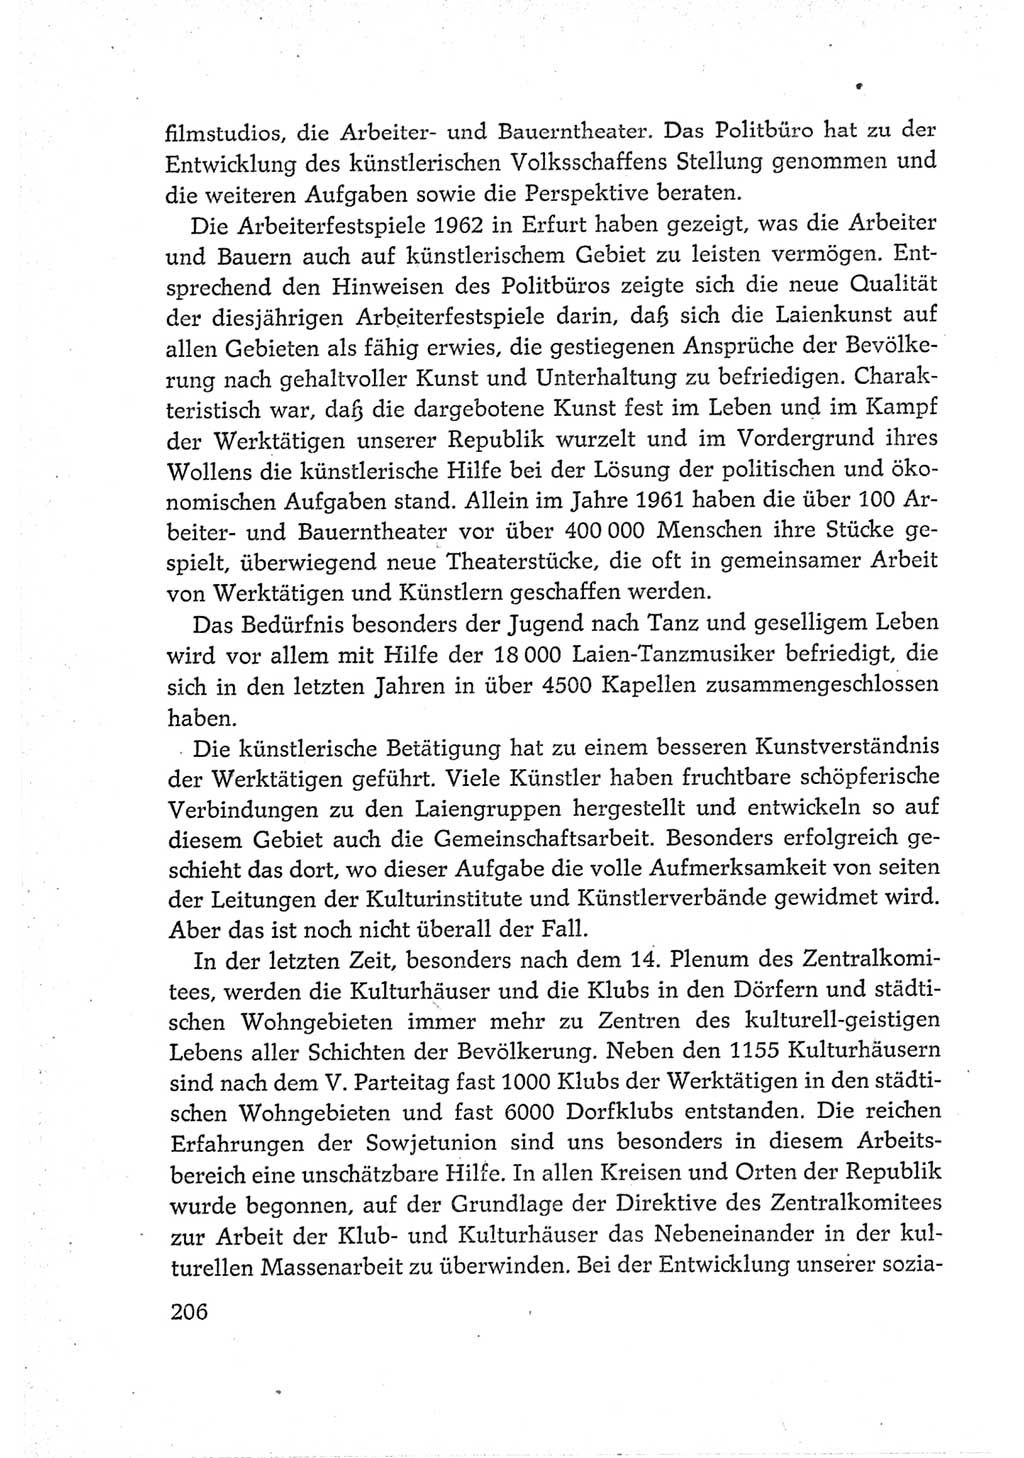 Protokoll der Verhandlungen des Ⅵ. Parteitages der Sozialistischen Einheitspartei Deutschlands (SED) [Deutsche Demokratische Republik (DDR)] 1963, Band Ⅳ, Seite 206 (Prot. Verh. Ⅵ. PT SED DDR 1963, Bd. Ⅳ, S. 206)